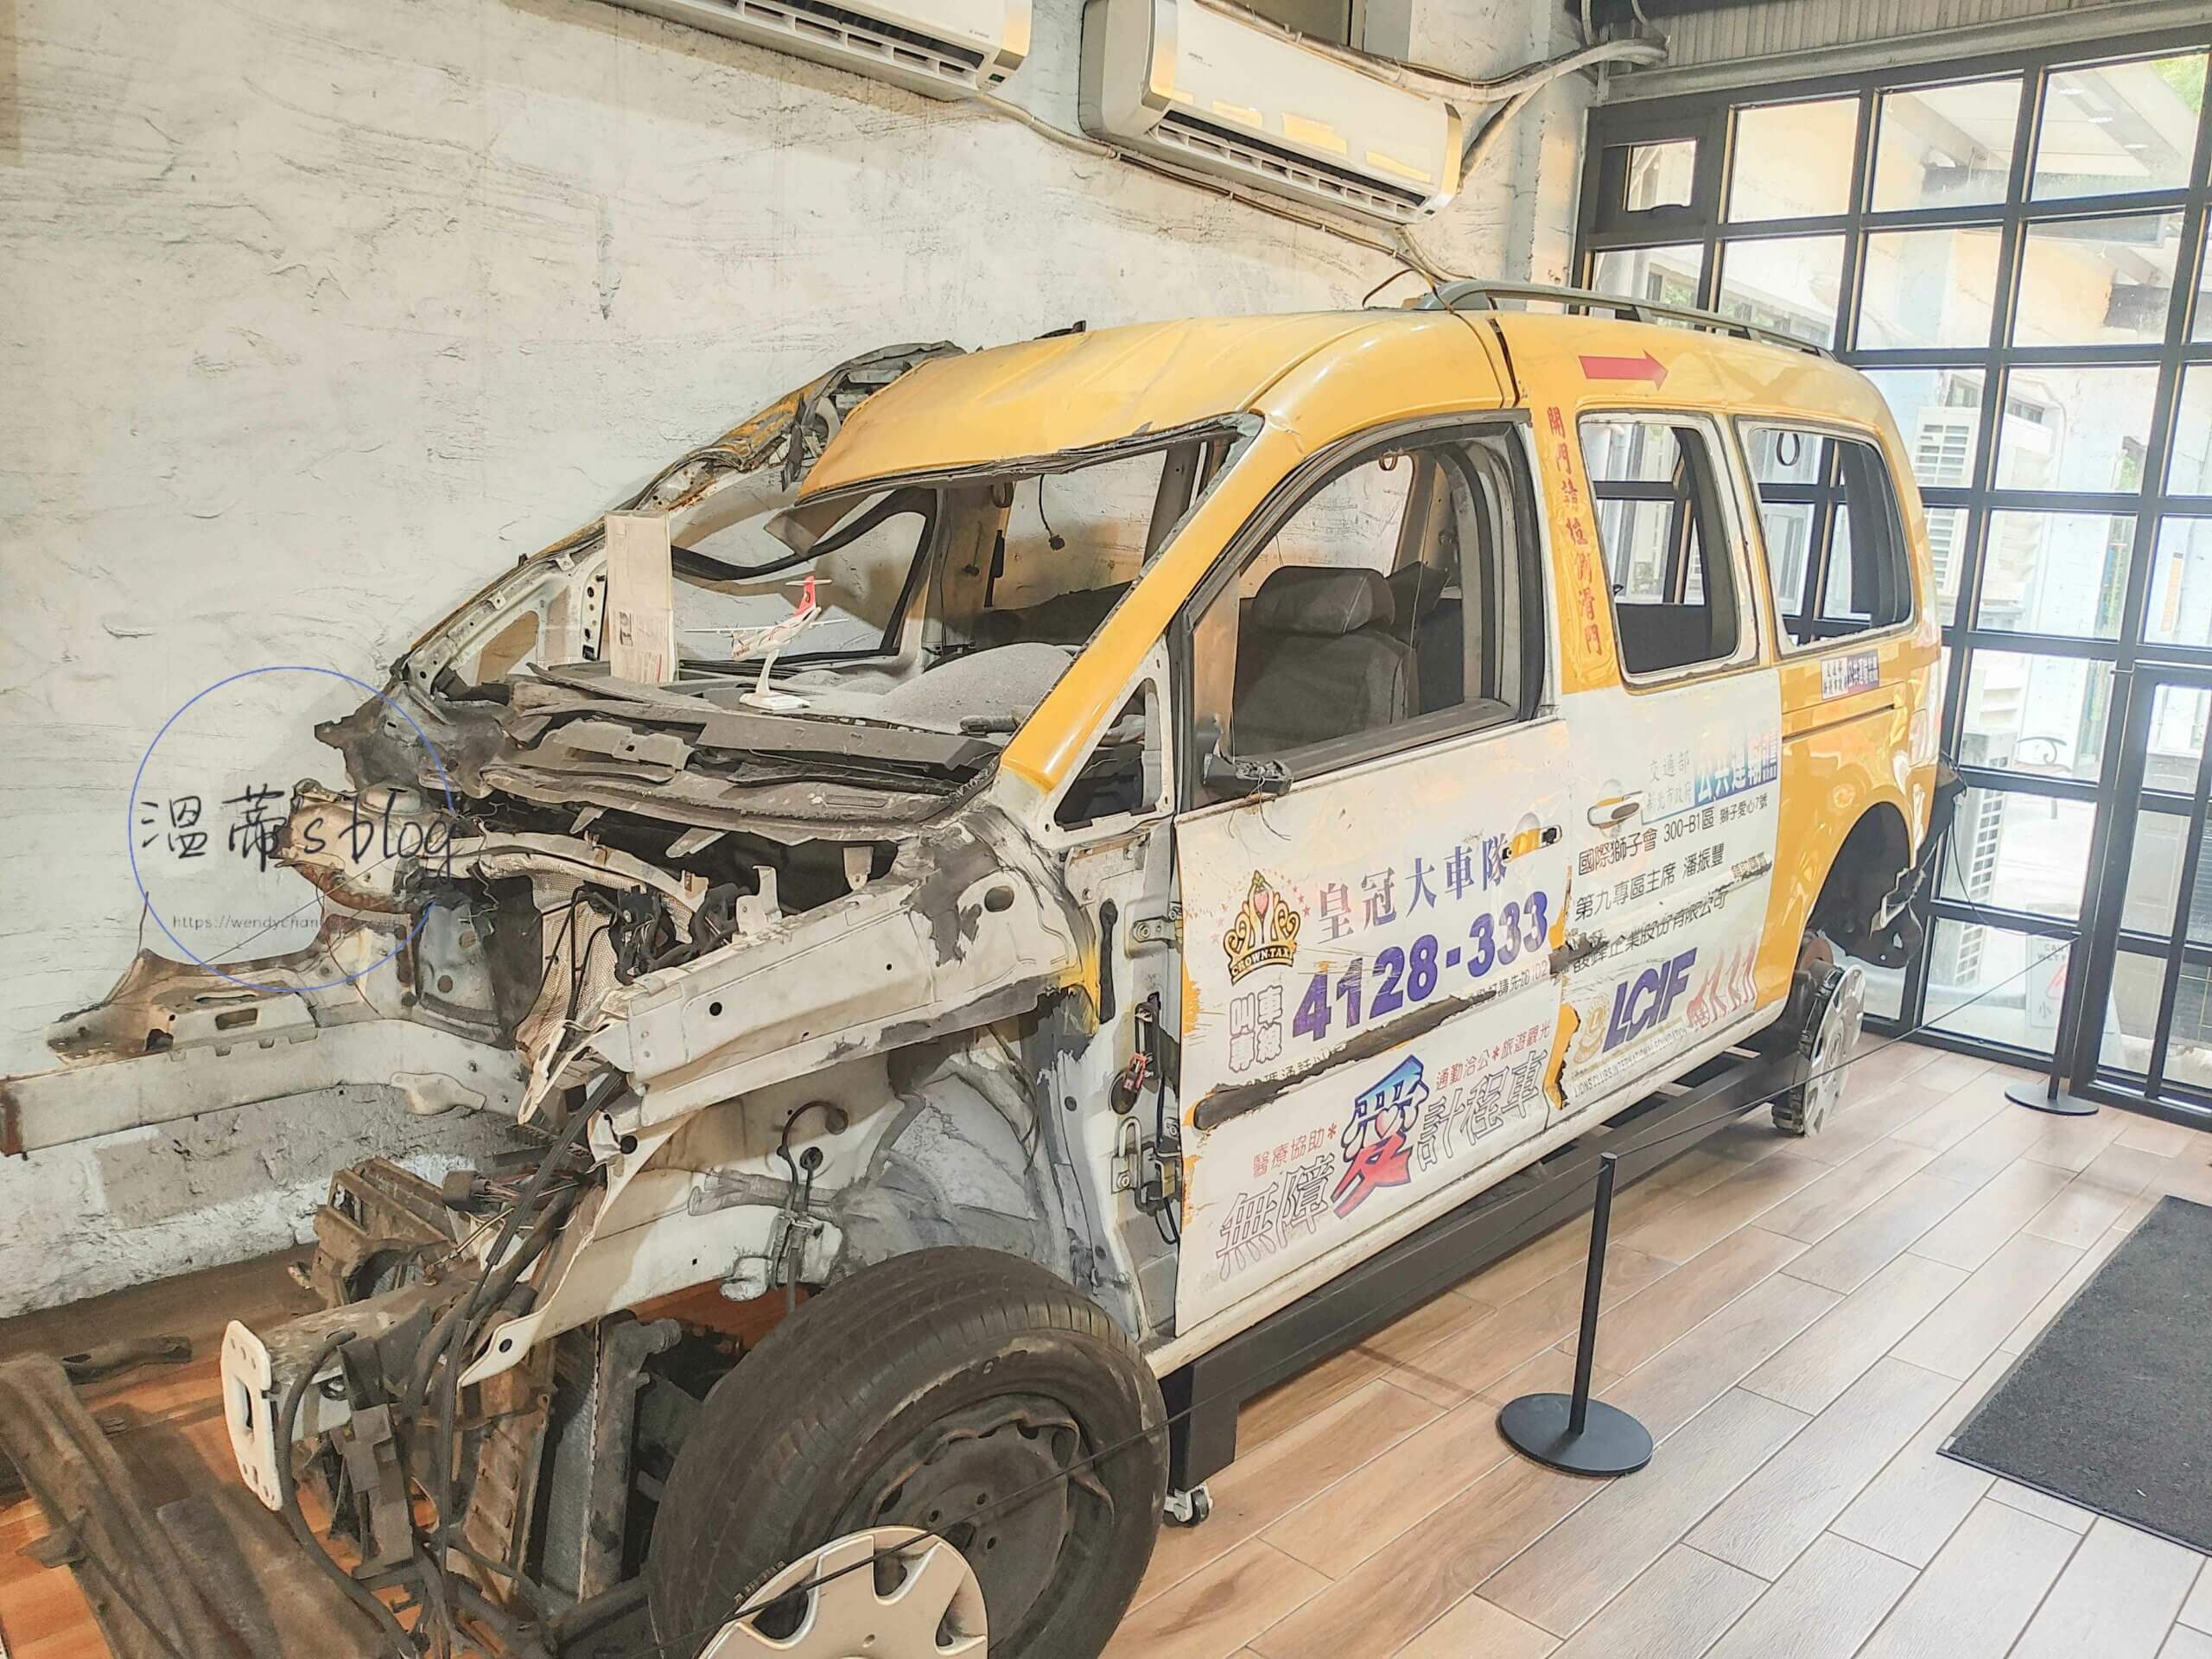 計程車博物館 復興航空空難被飛機撞爛的計程車